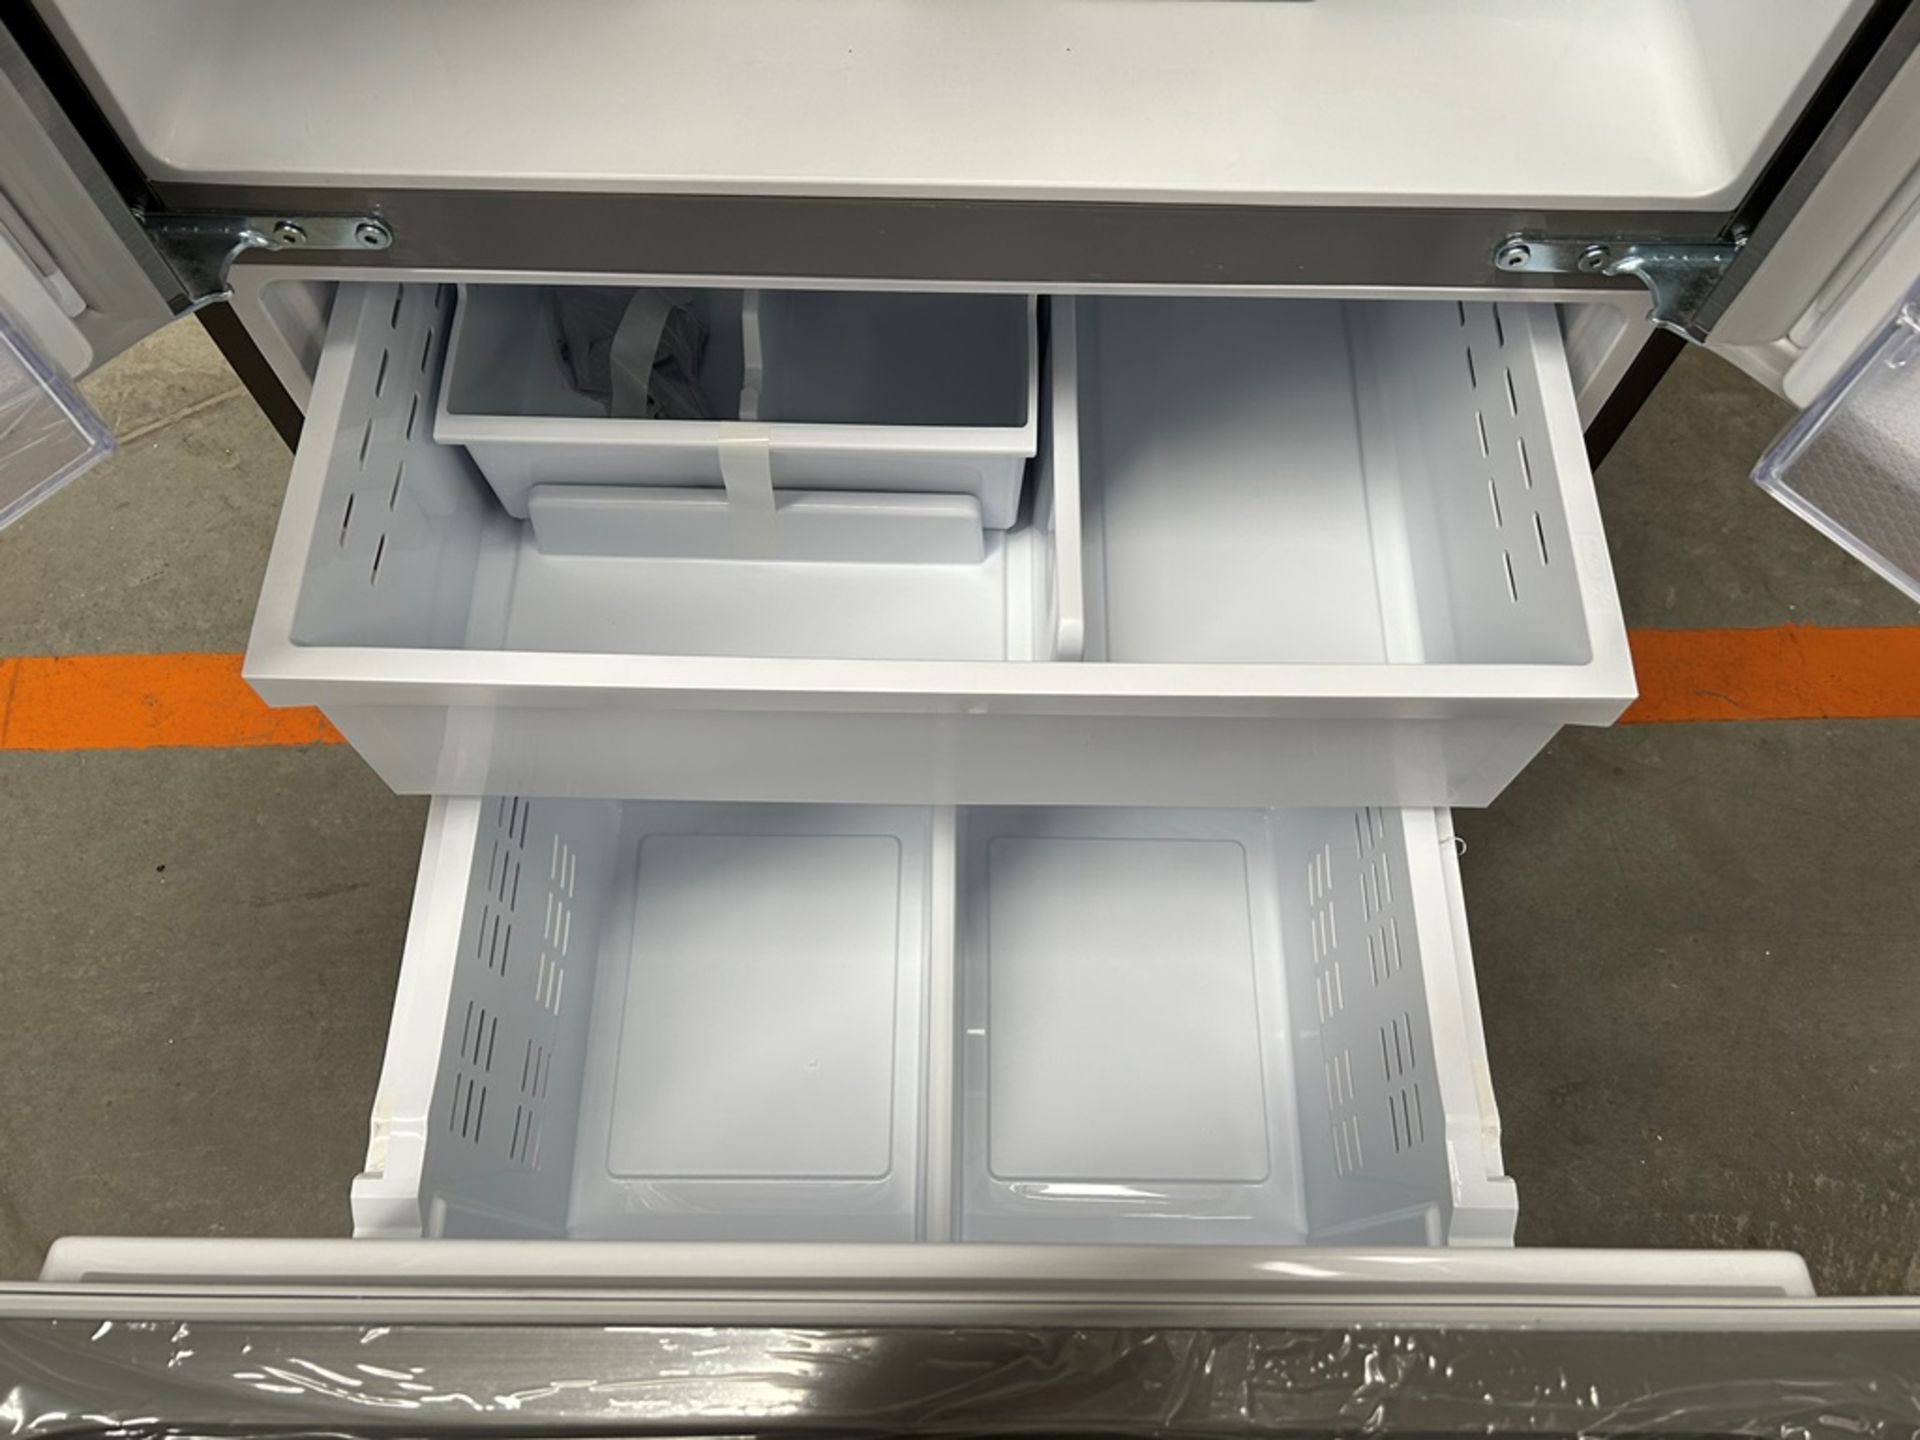 (NUEVO) Refrigerador Marca SAMSUNG, Modelo RF25C5151S9, Serie 01153L, Color GRIS - Image 8 of 11